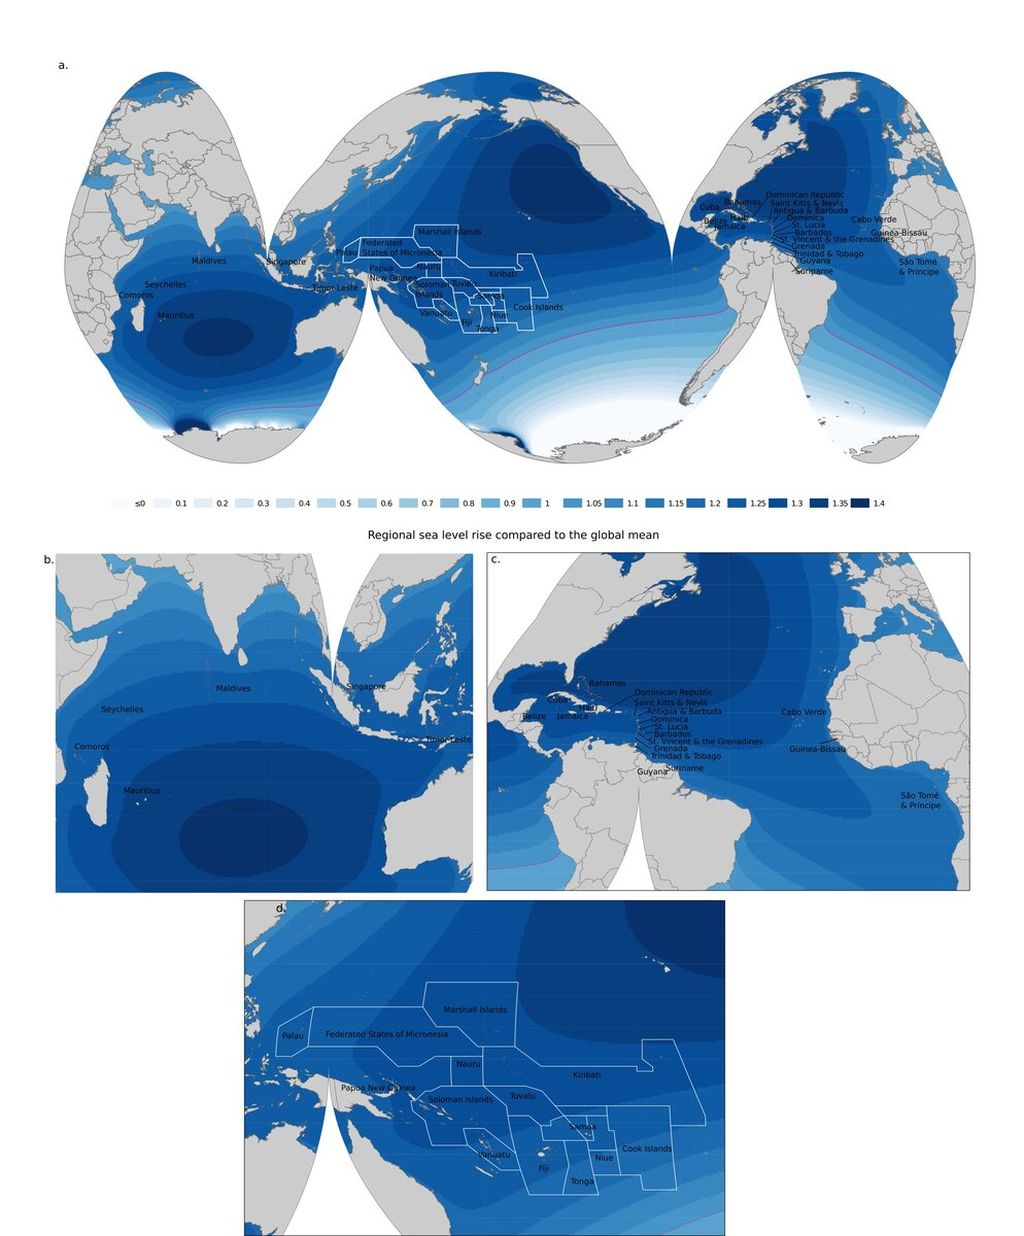 Distribusi spasial kontribusi Antartika terhadap kenaikan permukaan laut pada tahun 2100 (relatif terhadap tahun 2000) di bawah salah satu skenario emisi antara IPCC. Negara kepulauan secara tidak proporsional dipengaruhi oleh kenaikan permukaan laut. Angka yang ditunjukkan pada legenda peta adalah faktor yang dibandingkan dengan permukaan laut rata-rata global, misalnya faktor 1,2 menunjukkan bahwa lokasi mengalami kenaikan permukaan laut 1,2 kali nilai rata-rata global (Sumber: Masa Depan Bumi, 2022).